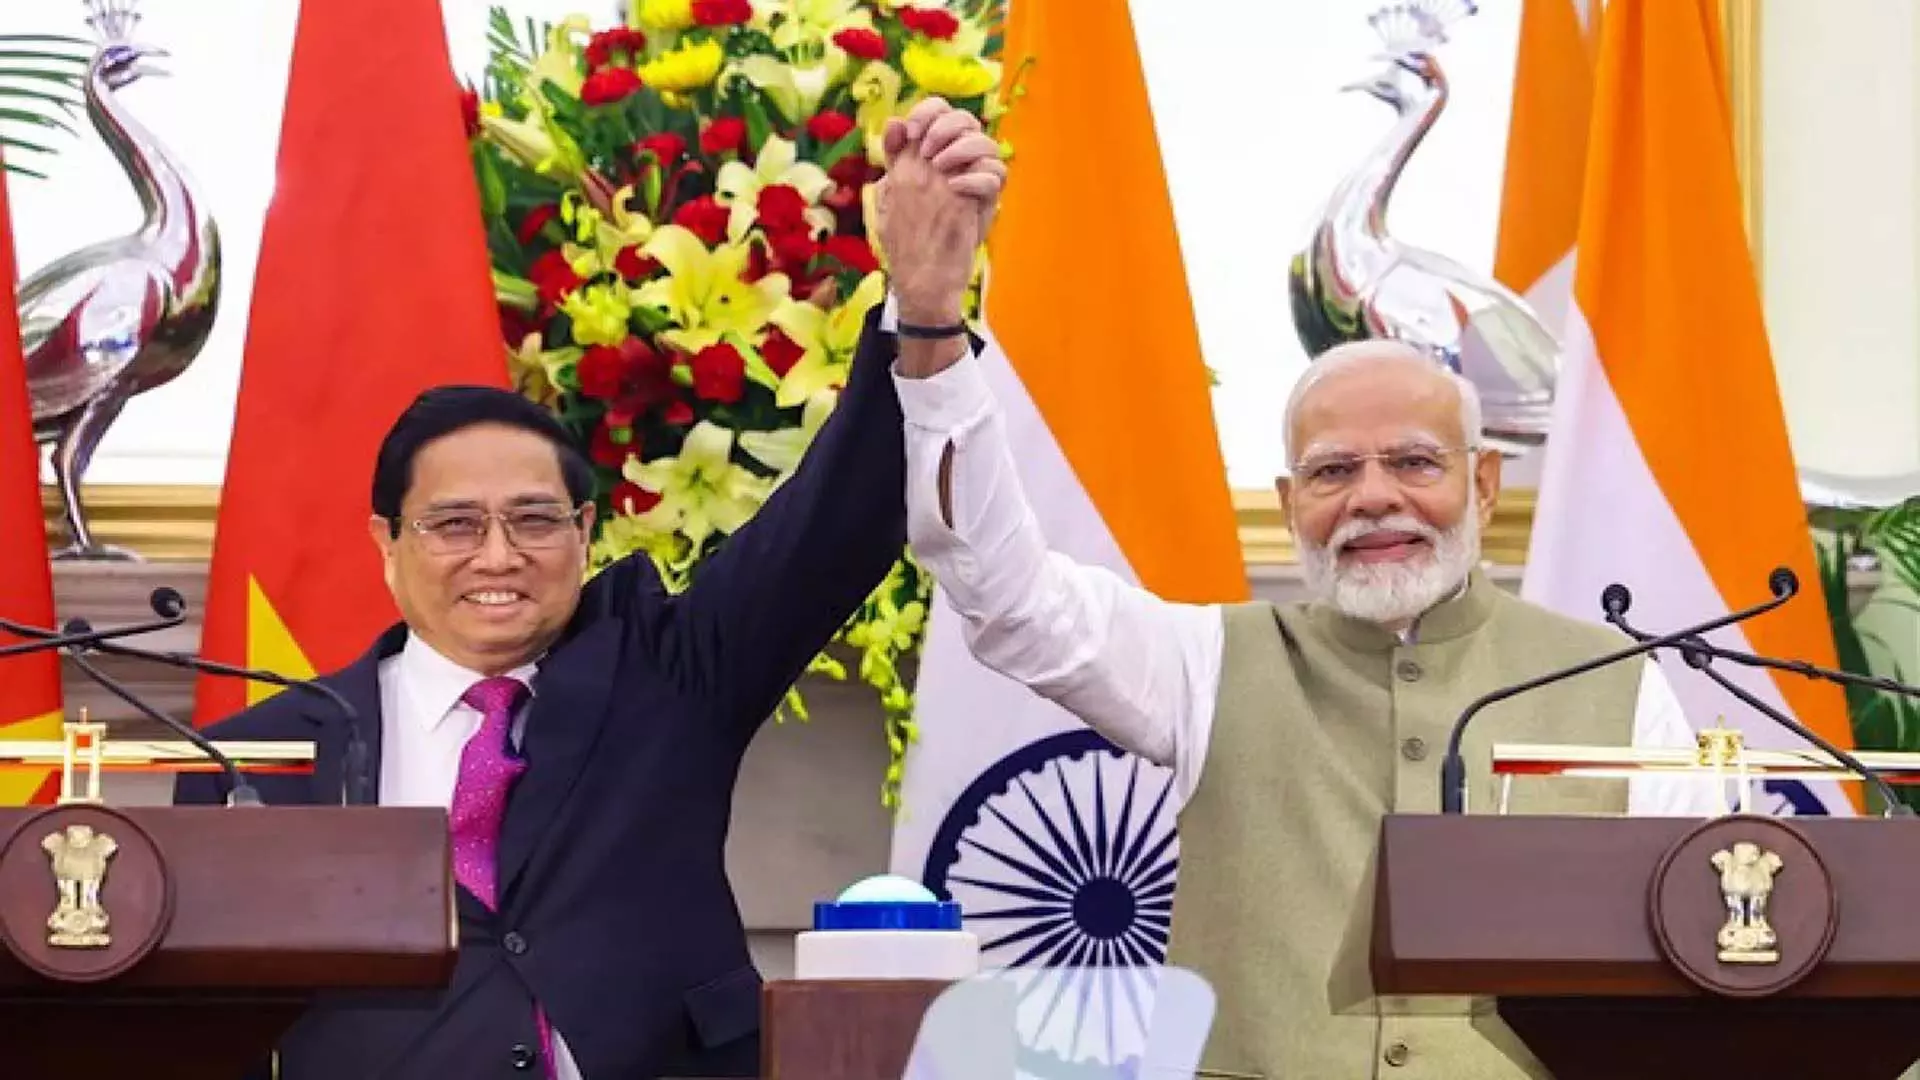 India, वियतनाम सभी क्षेत्रों में व्यापक रणनीतिक साझेदारी मजबूत करने पर सहमत हुए